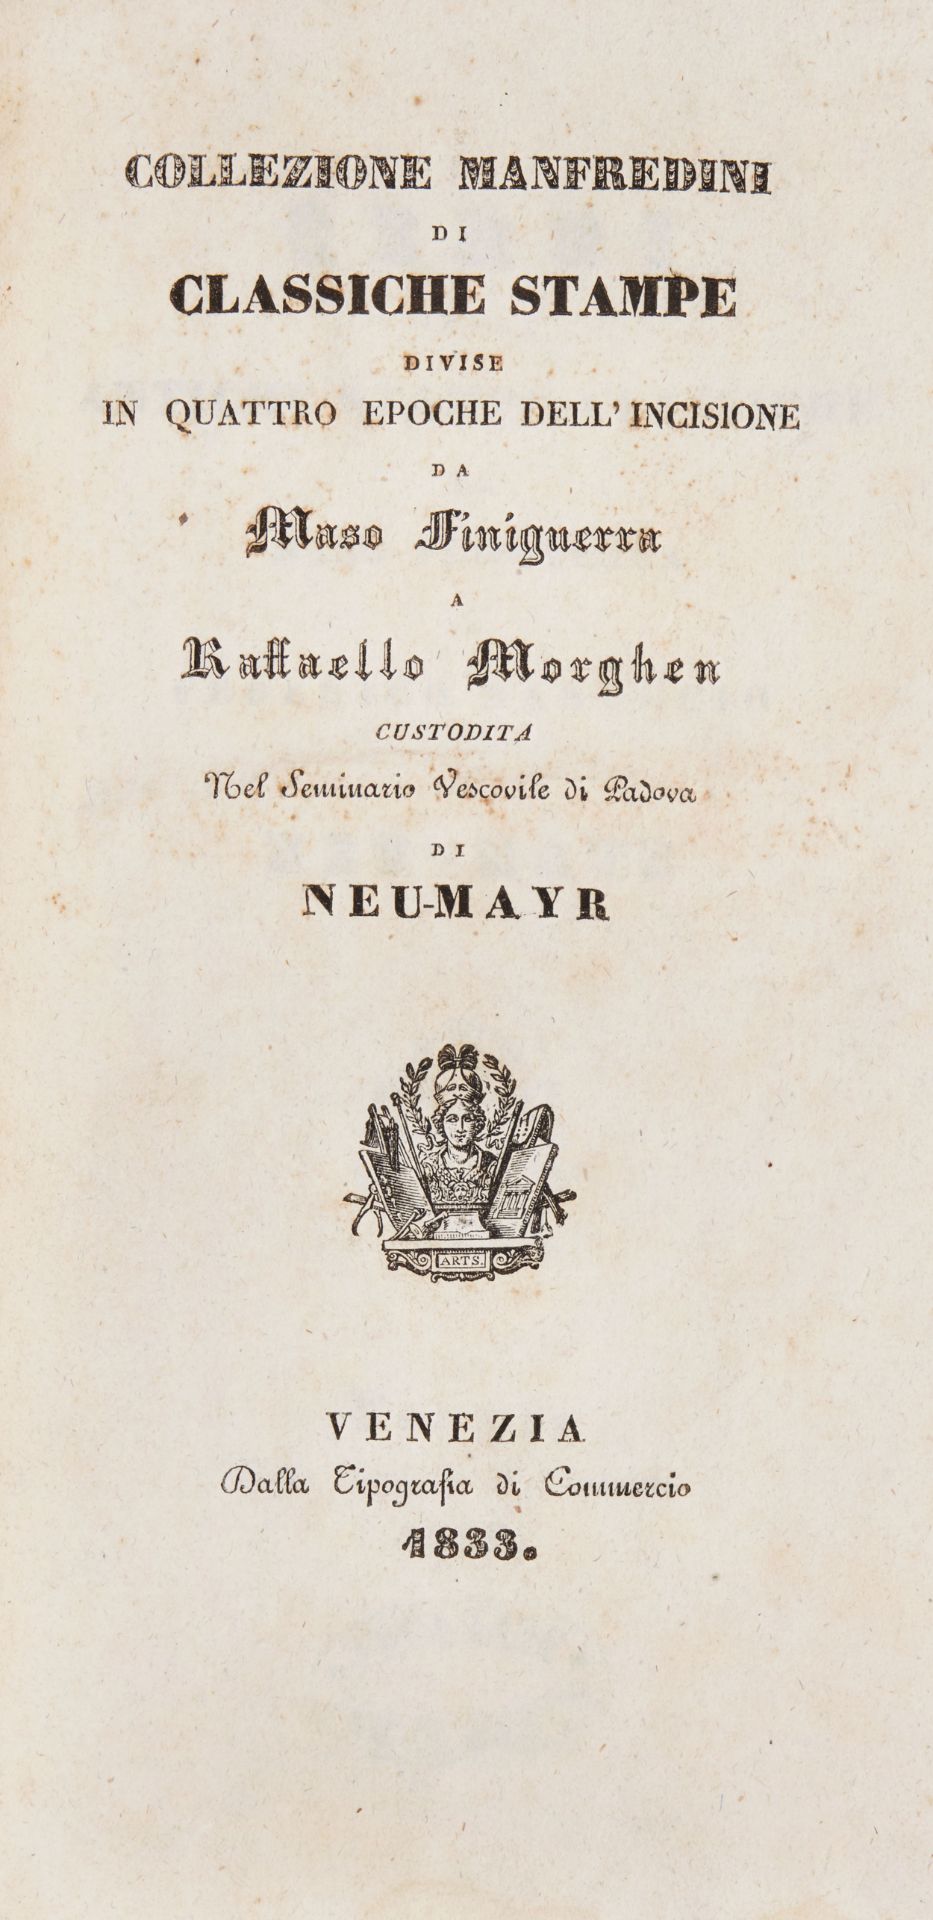 NEU-MAYR, Antonio (1772-1840). Collezione Manfredini di classiche stampe divise in quattro epoche. - Bild 2 aus 2